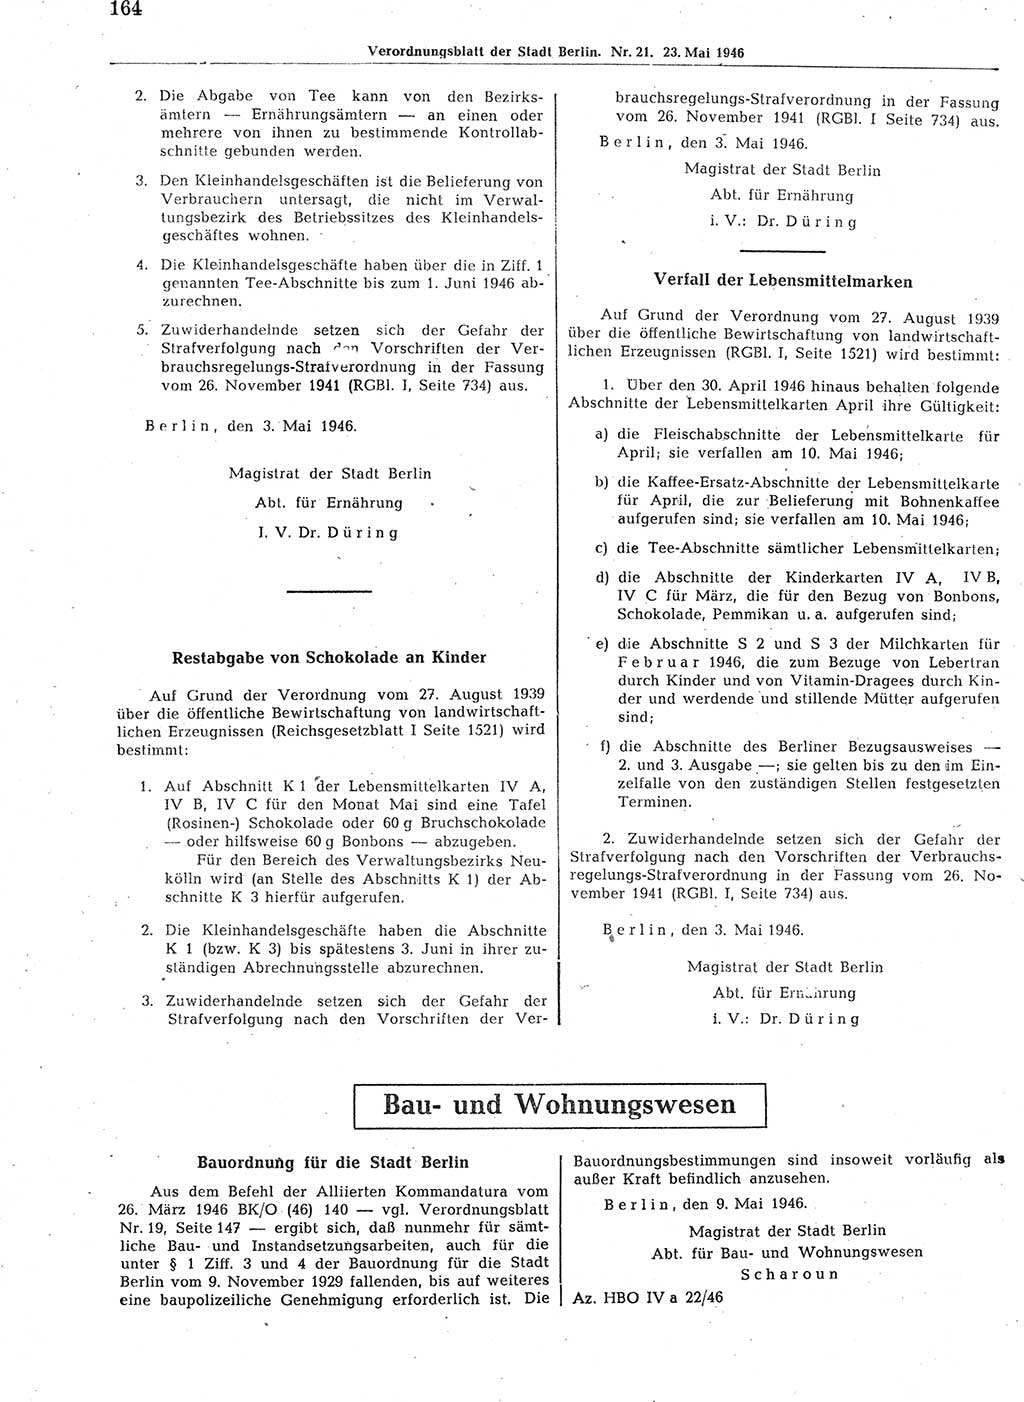 Verordnungsblatt (VOBl.) der Stadt Berlin, für Groß-Berlin 1946, Seite 164 (VOBl. Bln. 1946, S. 164)